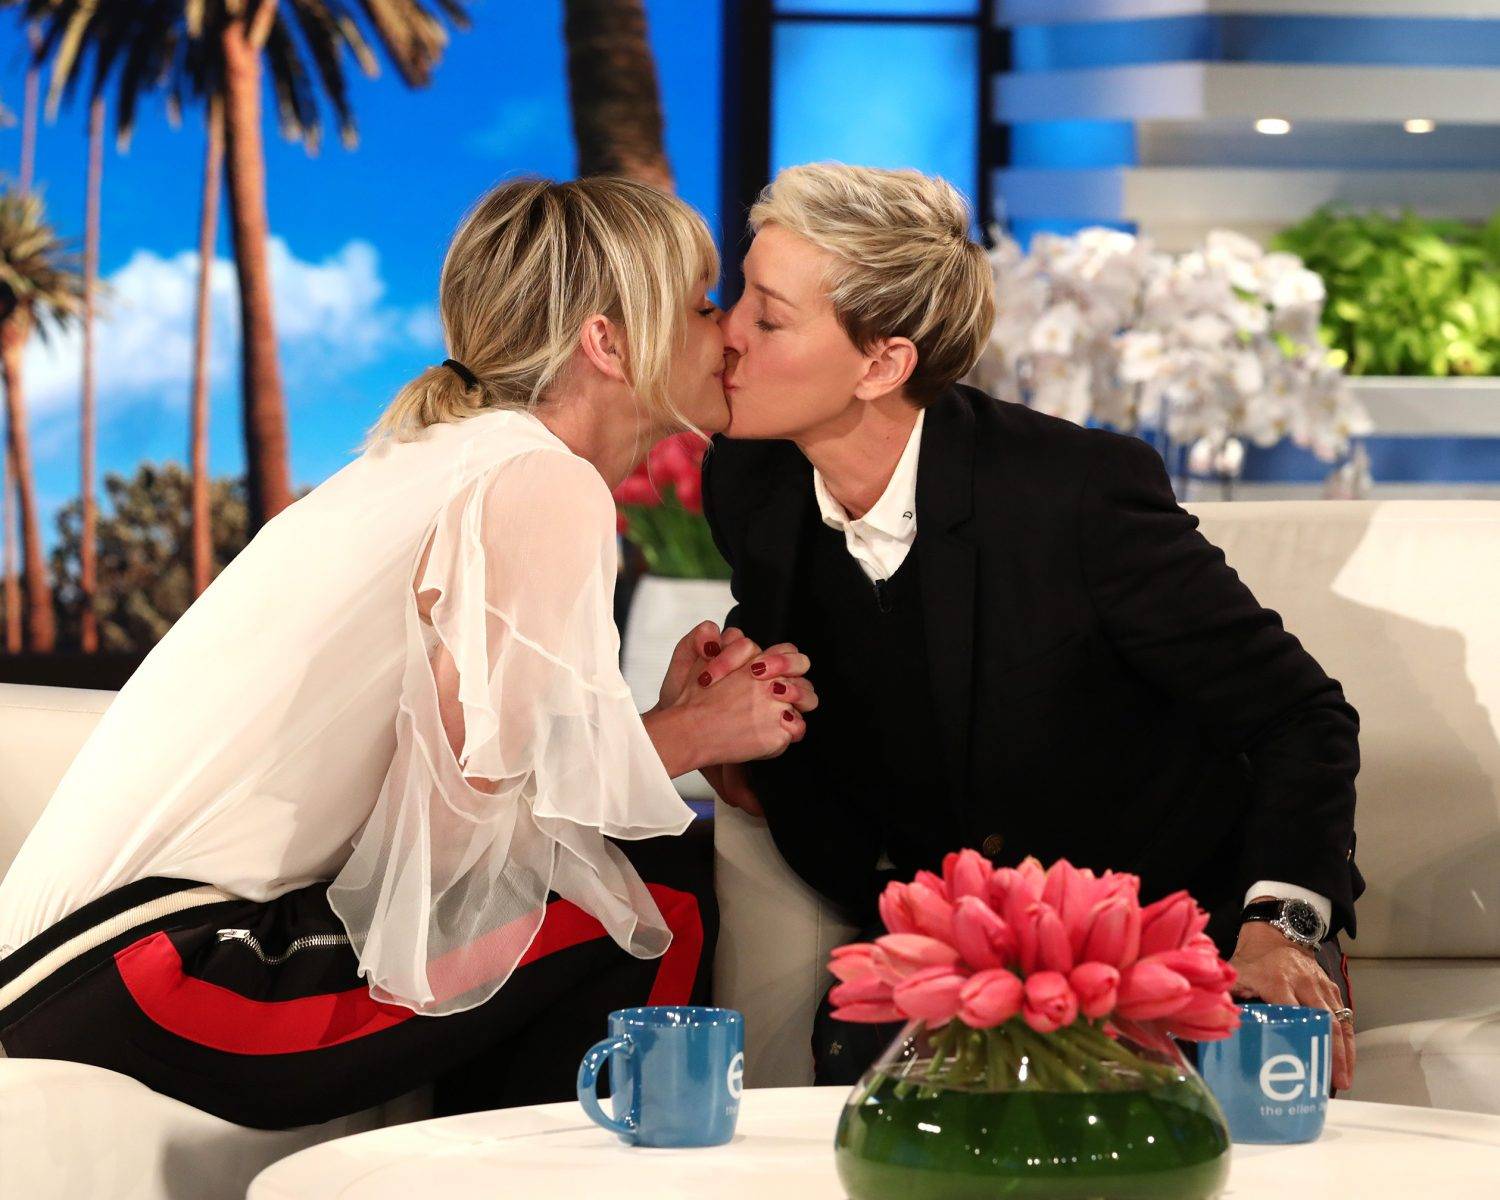  Ellen und Portia küssen sich